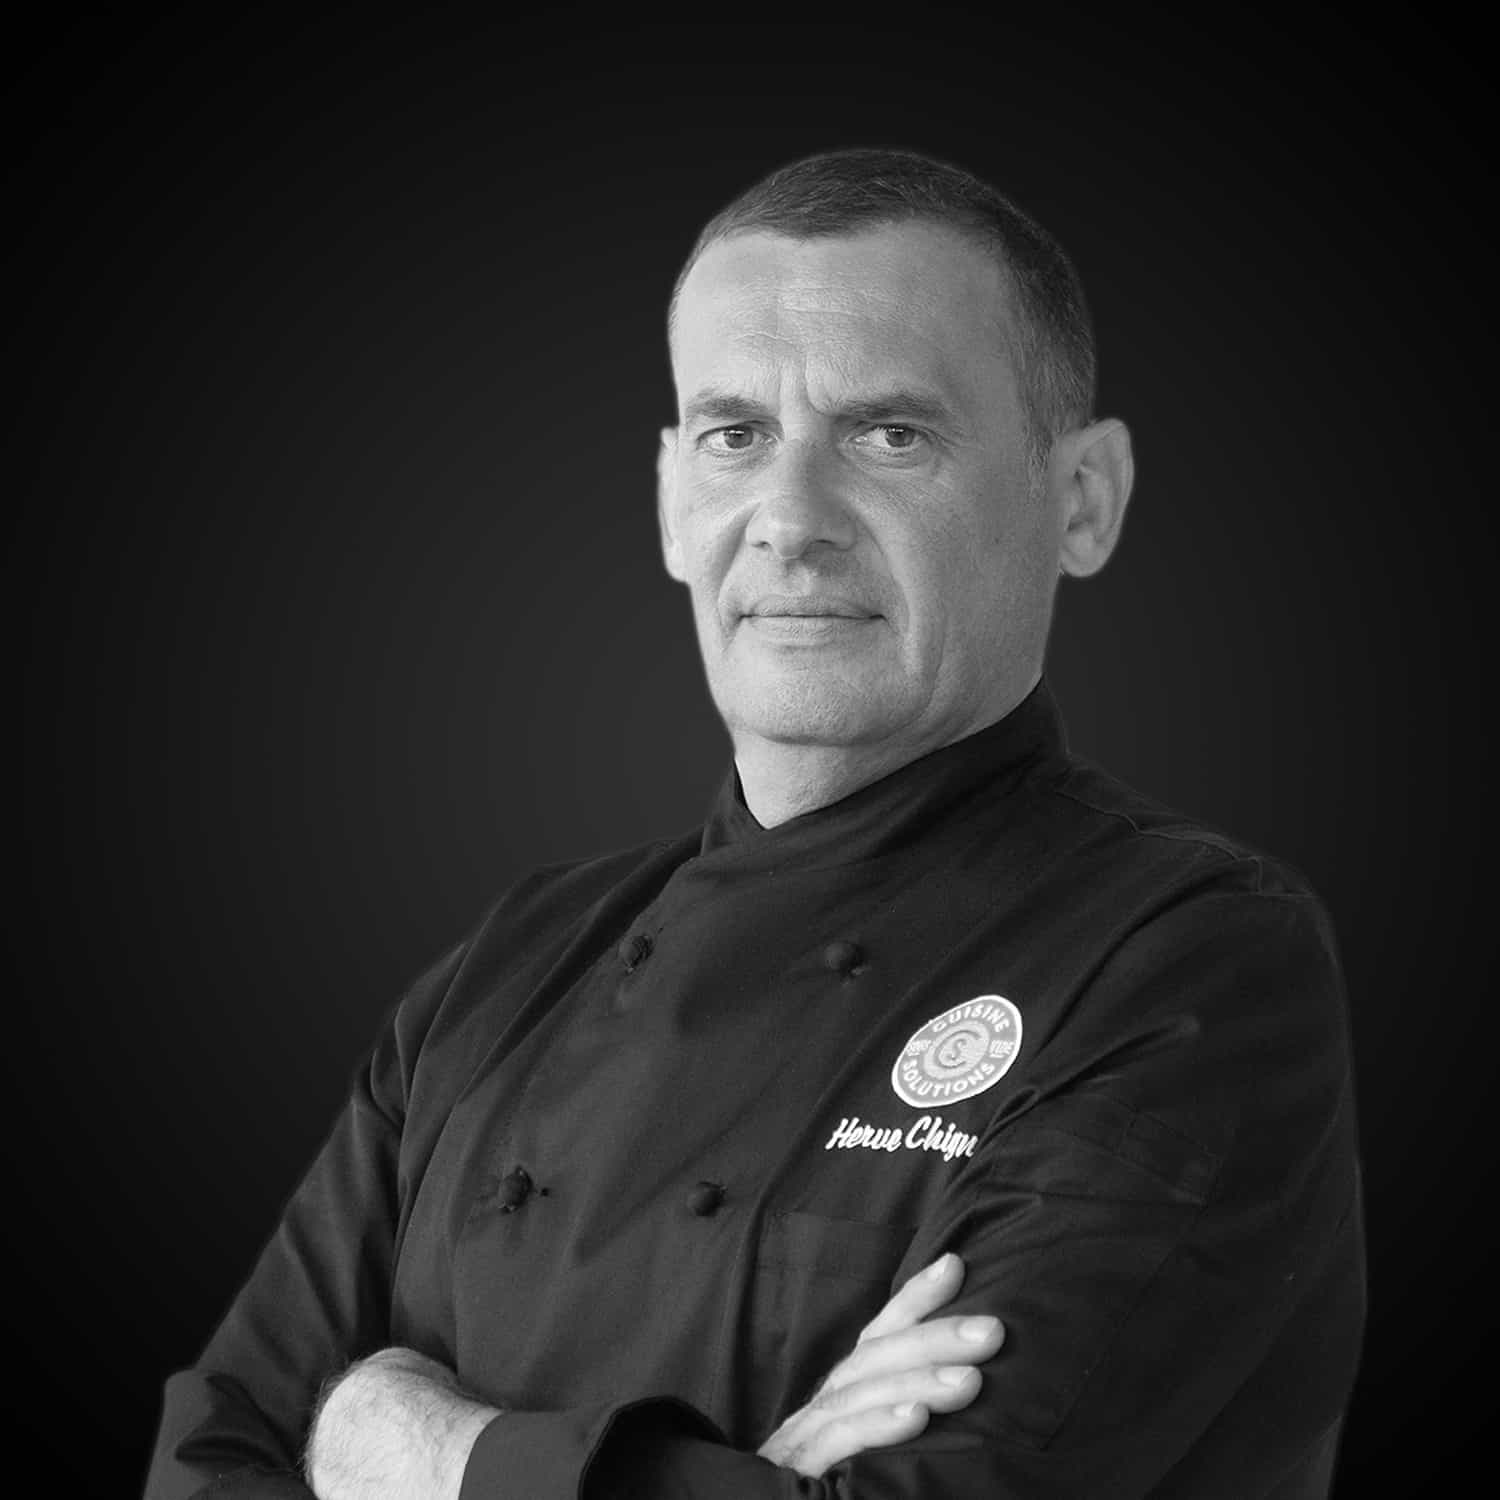 Portrait du Chef Hervé Chignon